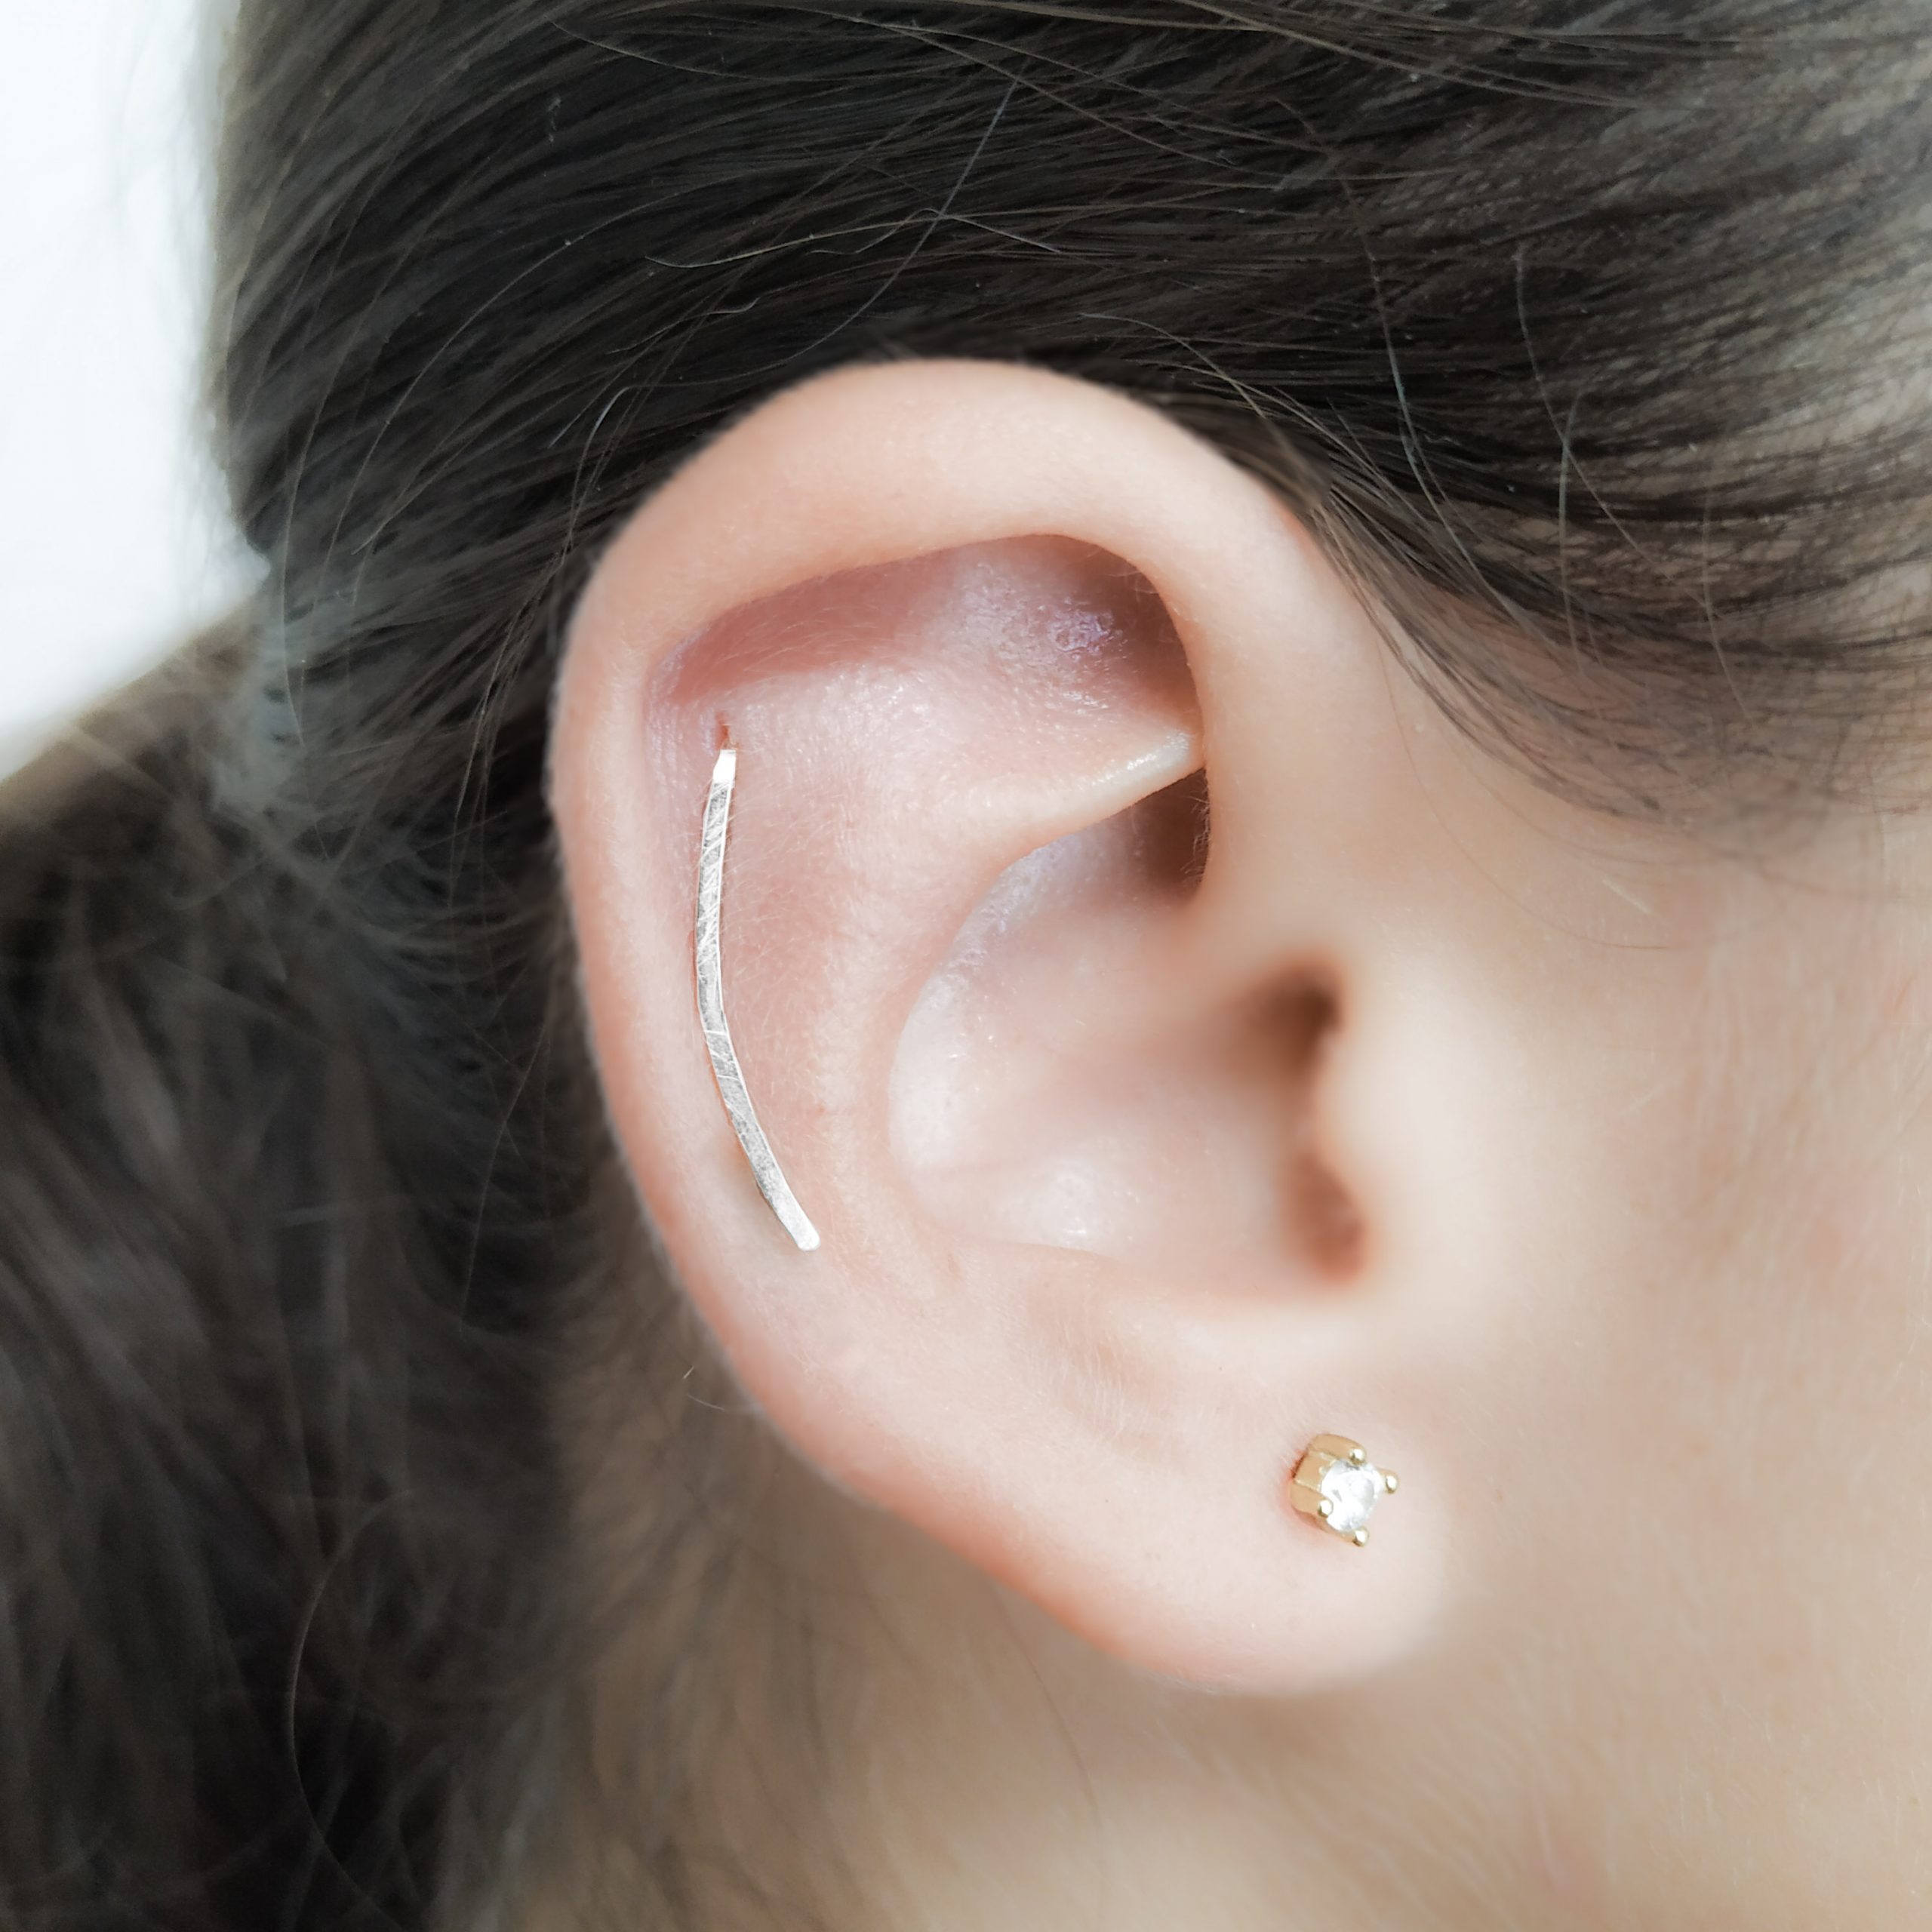 Cartilage Earrings Stud Gem Flat Disc Back Tragus Nose Helix Labret Piercing  UK | eBay